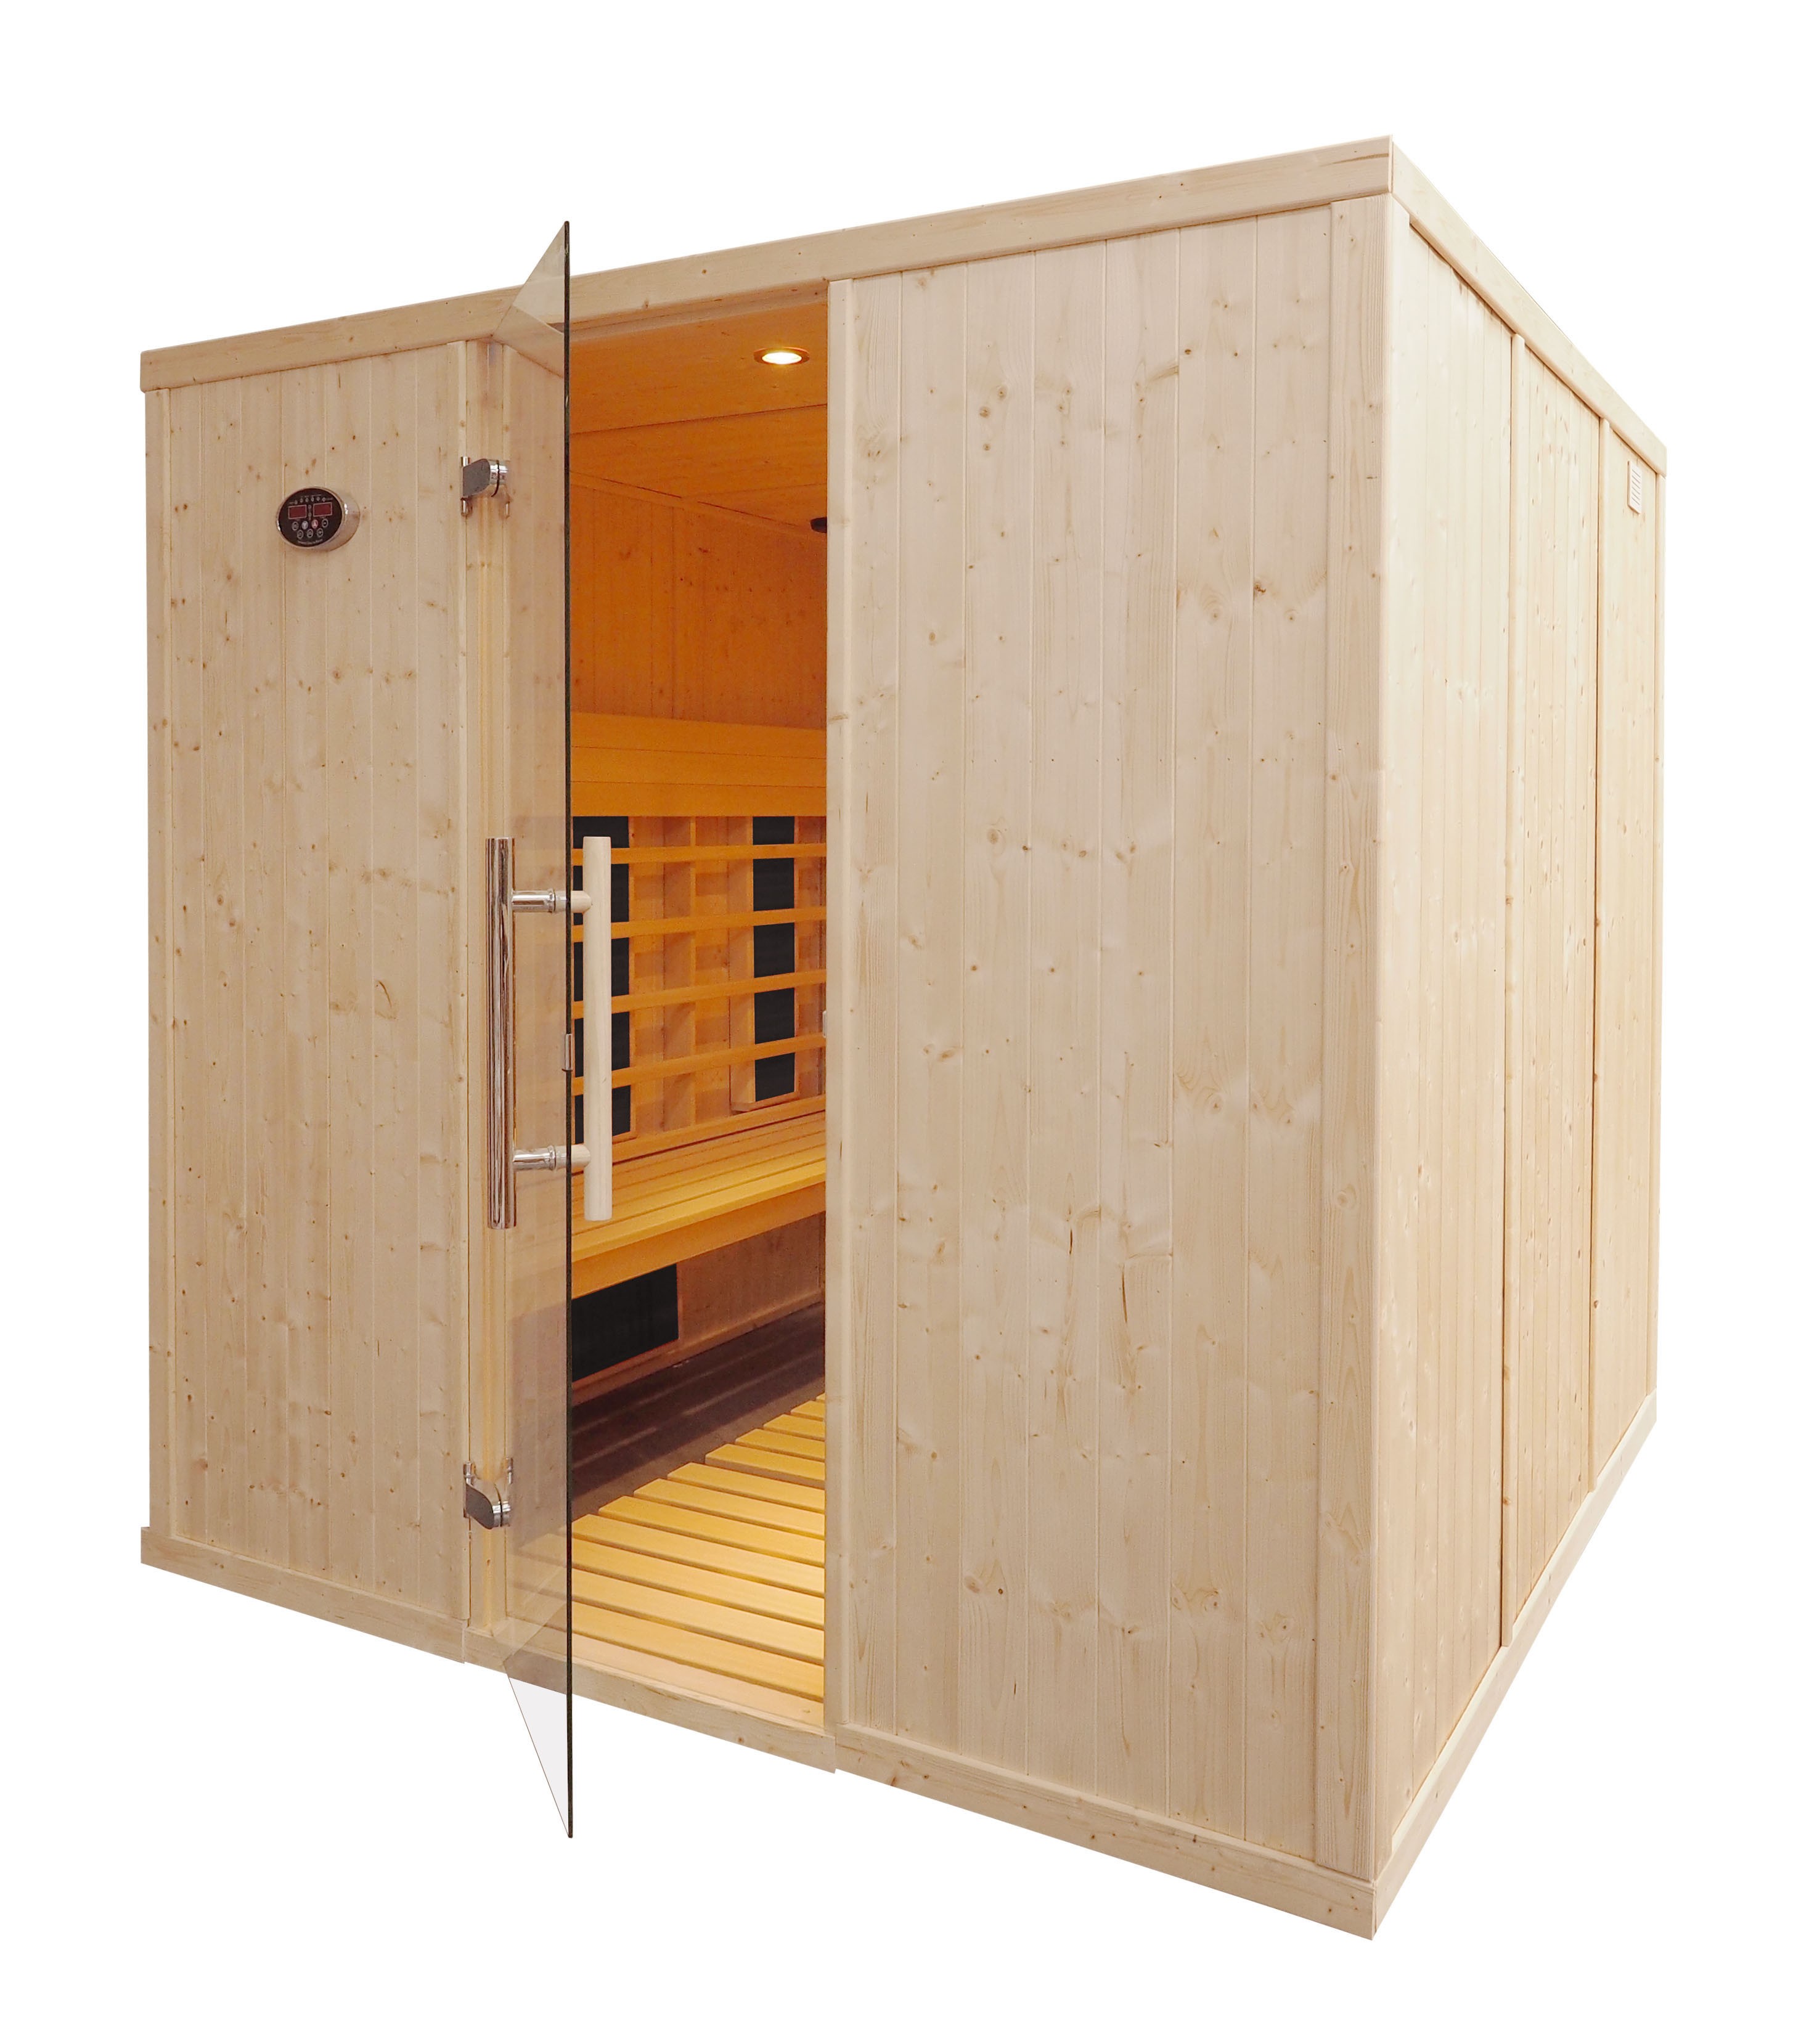 Sauna ad infrarossi professionale da 6 posti - IR3030 con panche parallele